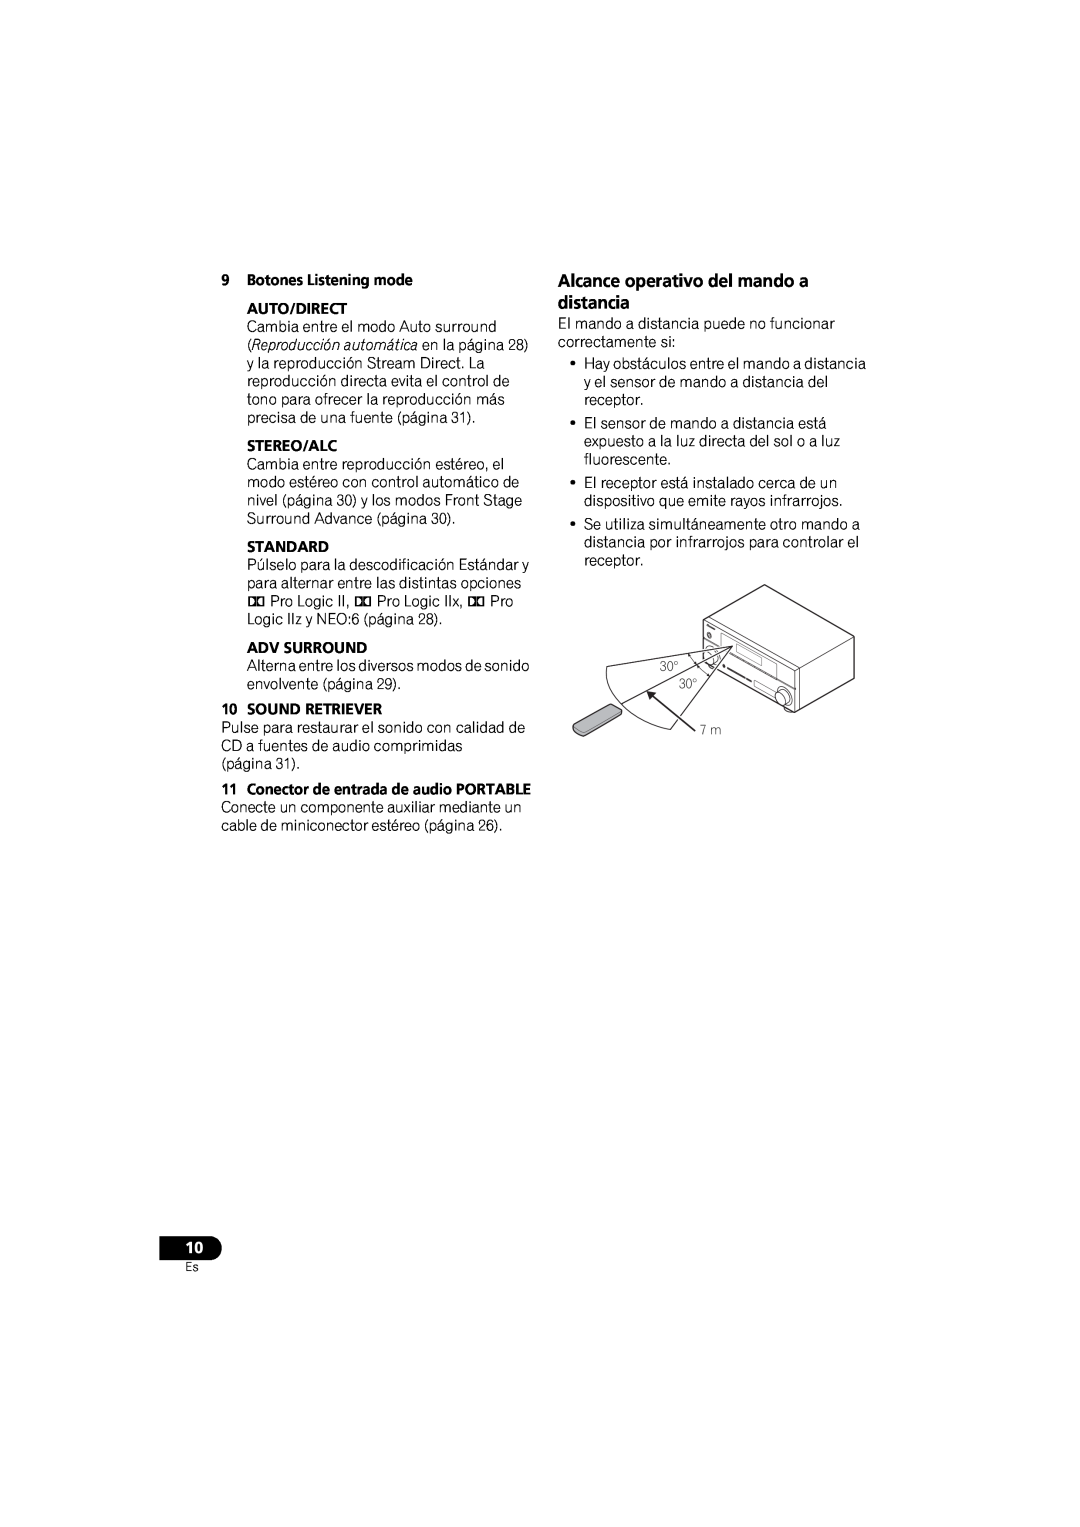 Pioneer VSX-520 manual Alcance operativo del mando a distancia, 9Botones Listening mode AUTO/DIRECT, Stereo/Alc, Standard 